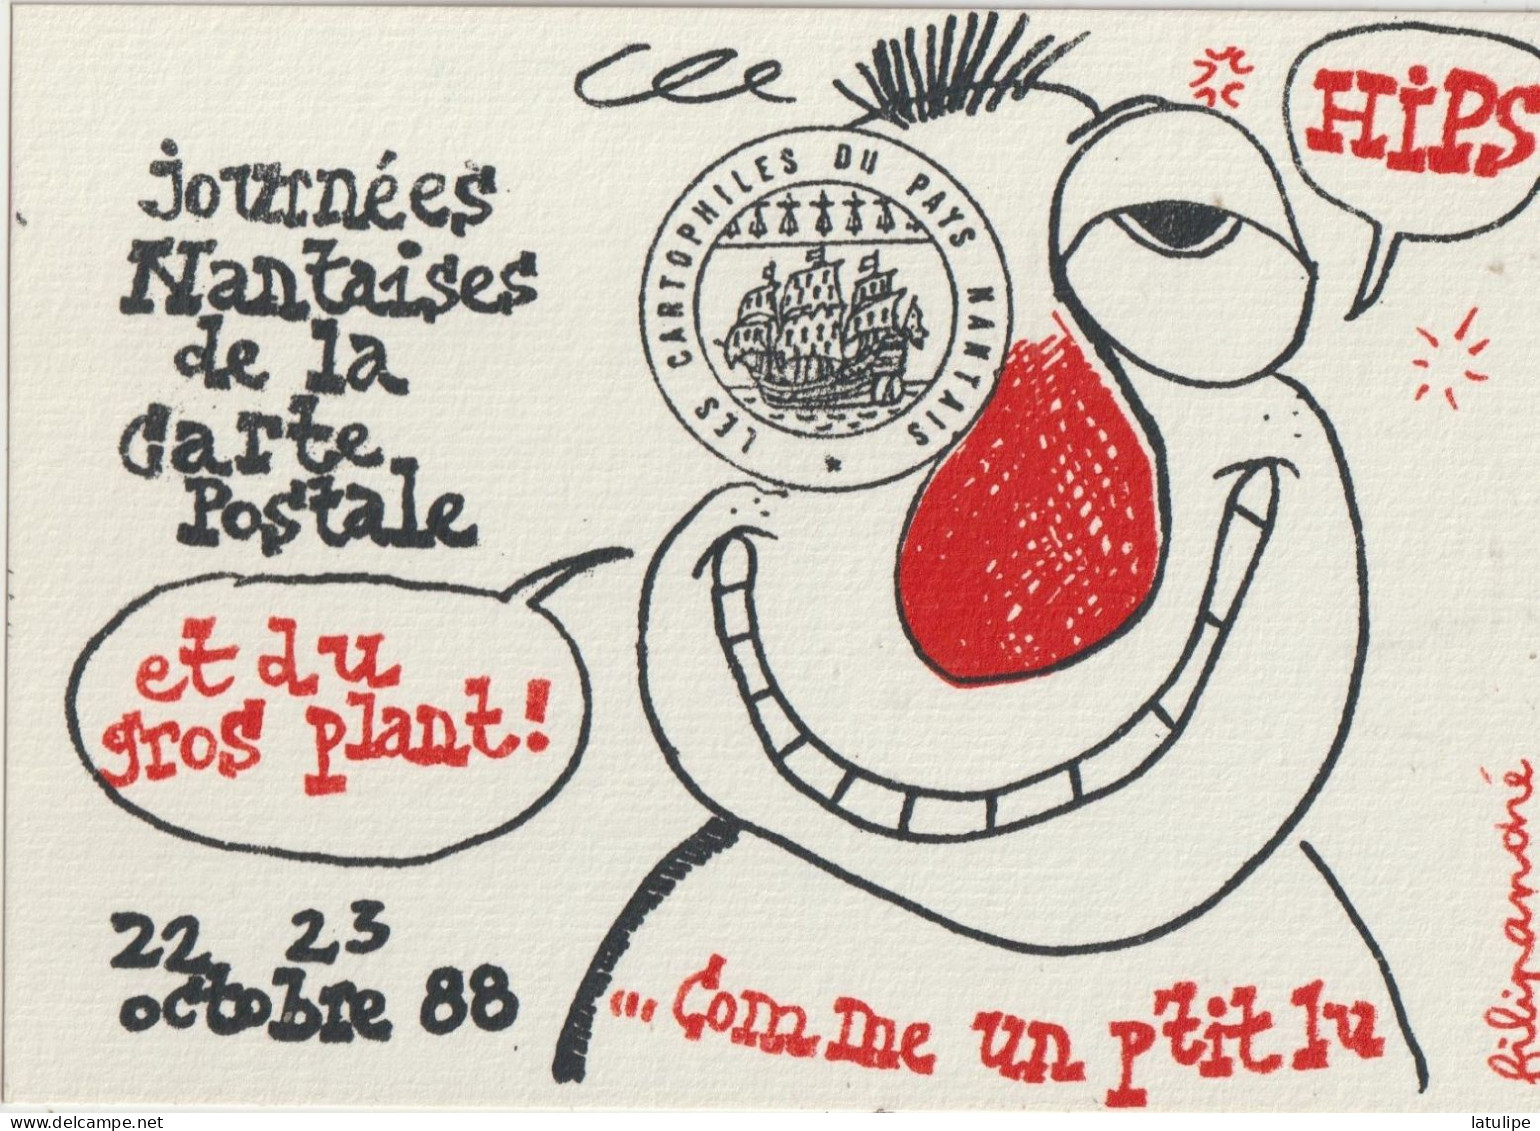 Journées Nantaises De La Carte Postale  Du 22 Au 23 Octobre 1988 ( HIPS  Et Du Plant ! ...Comme The Un P'tit Iu - Marquer